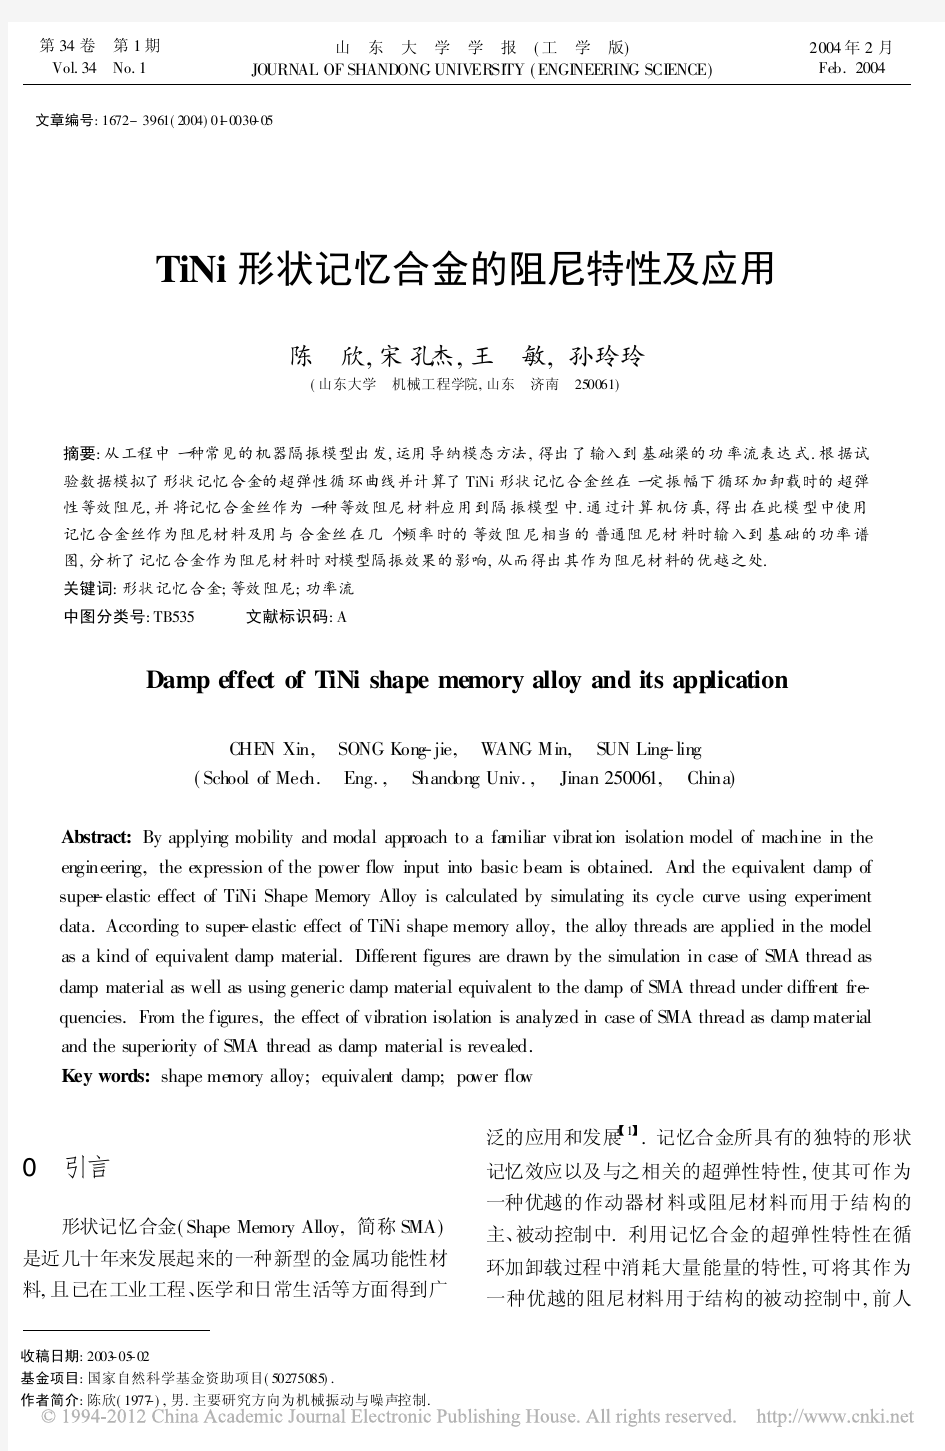 TiNi形状记忆合金的阻尼特性及应用